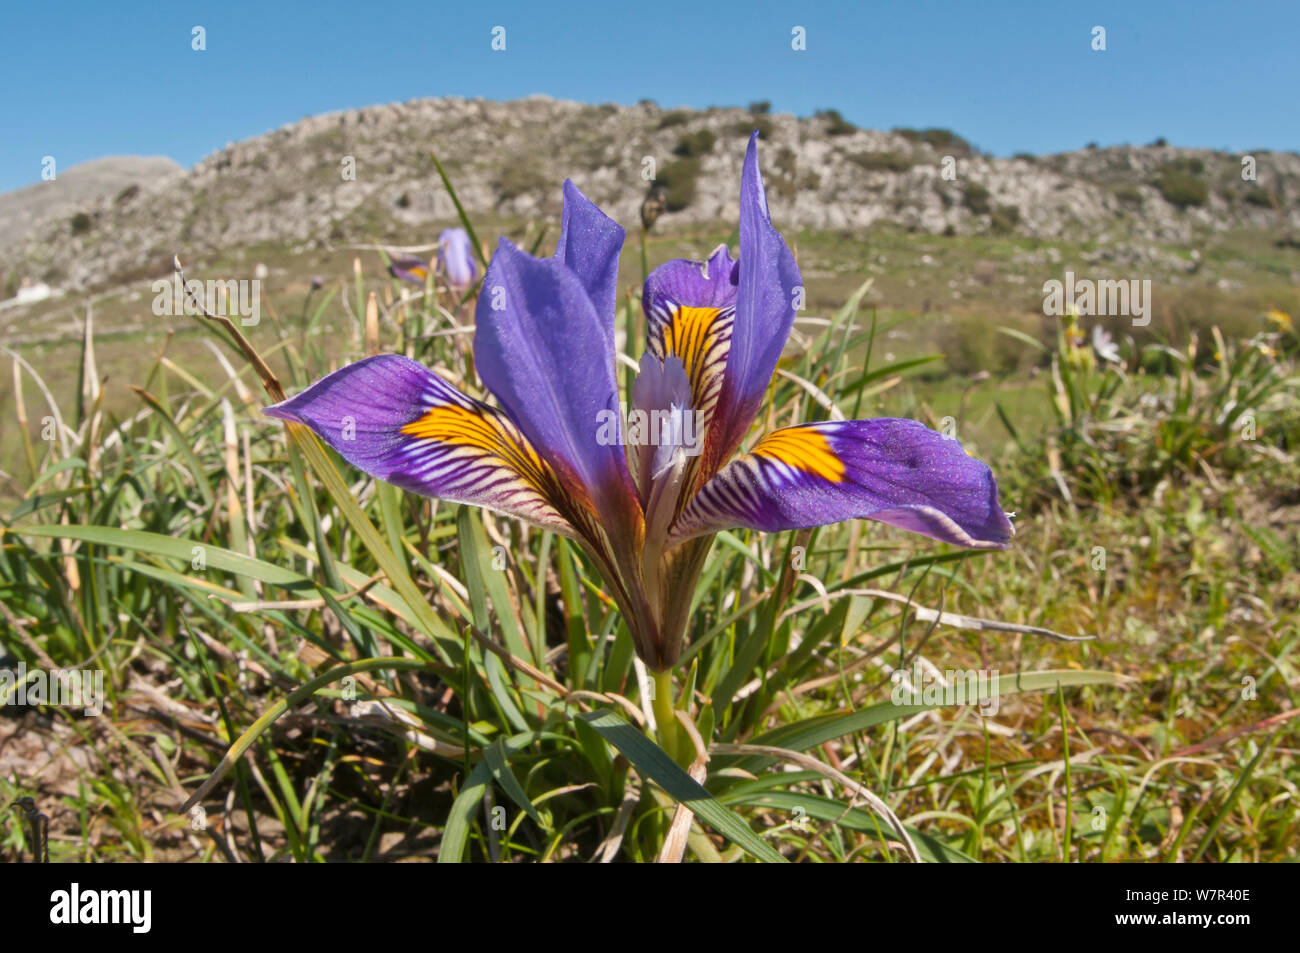 Cretan Iris (Iris cretensis / unguicularis ssp cretensis) in flower, Gious Kambos, Spili, Crete, April Stock Photo